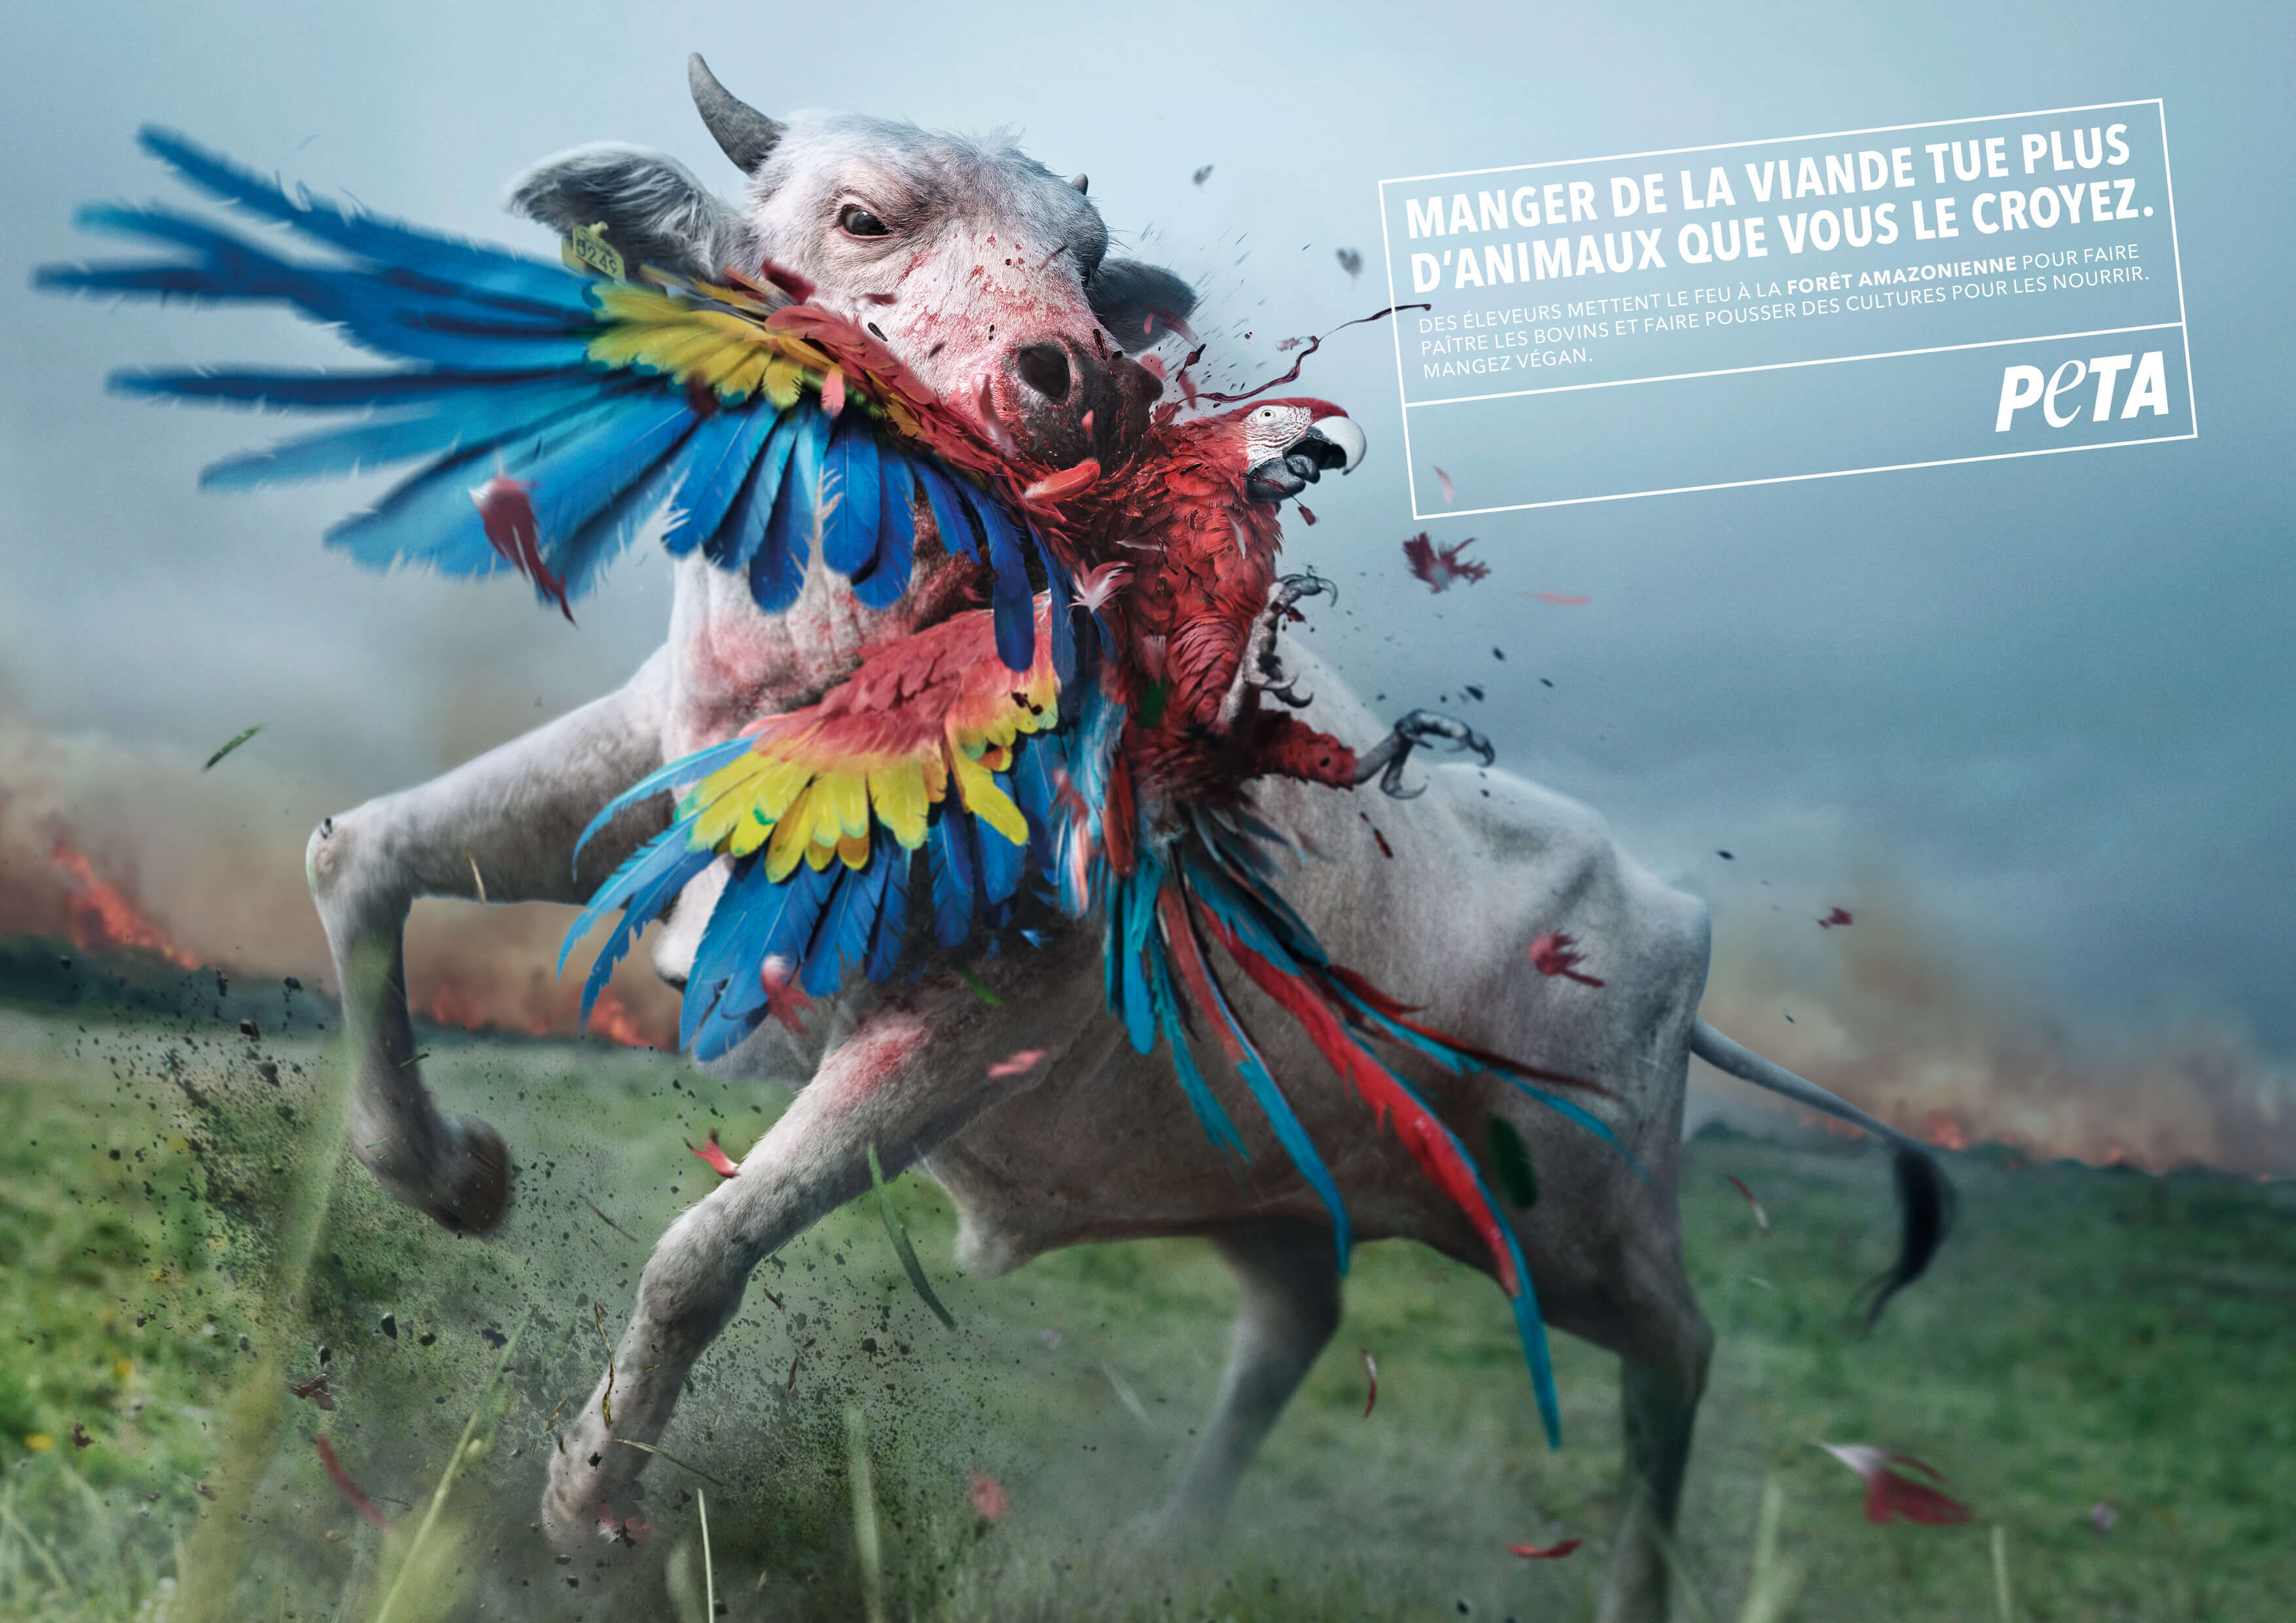 Une nouvelle publicité de PETA blâme les mangeurs de viande pour les incendies en Amazonie